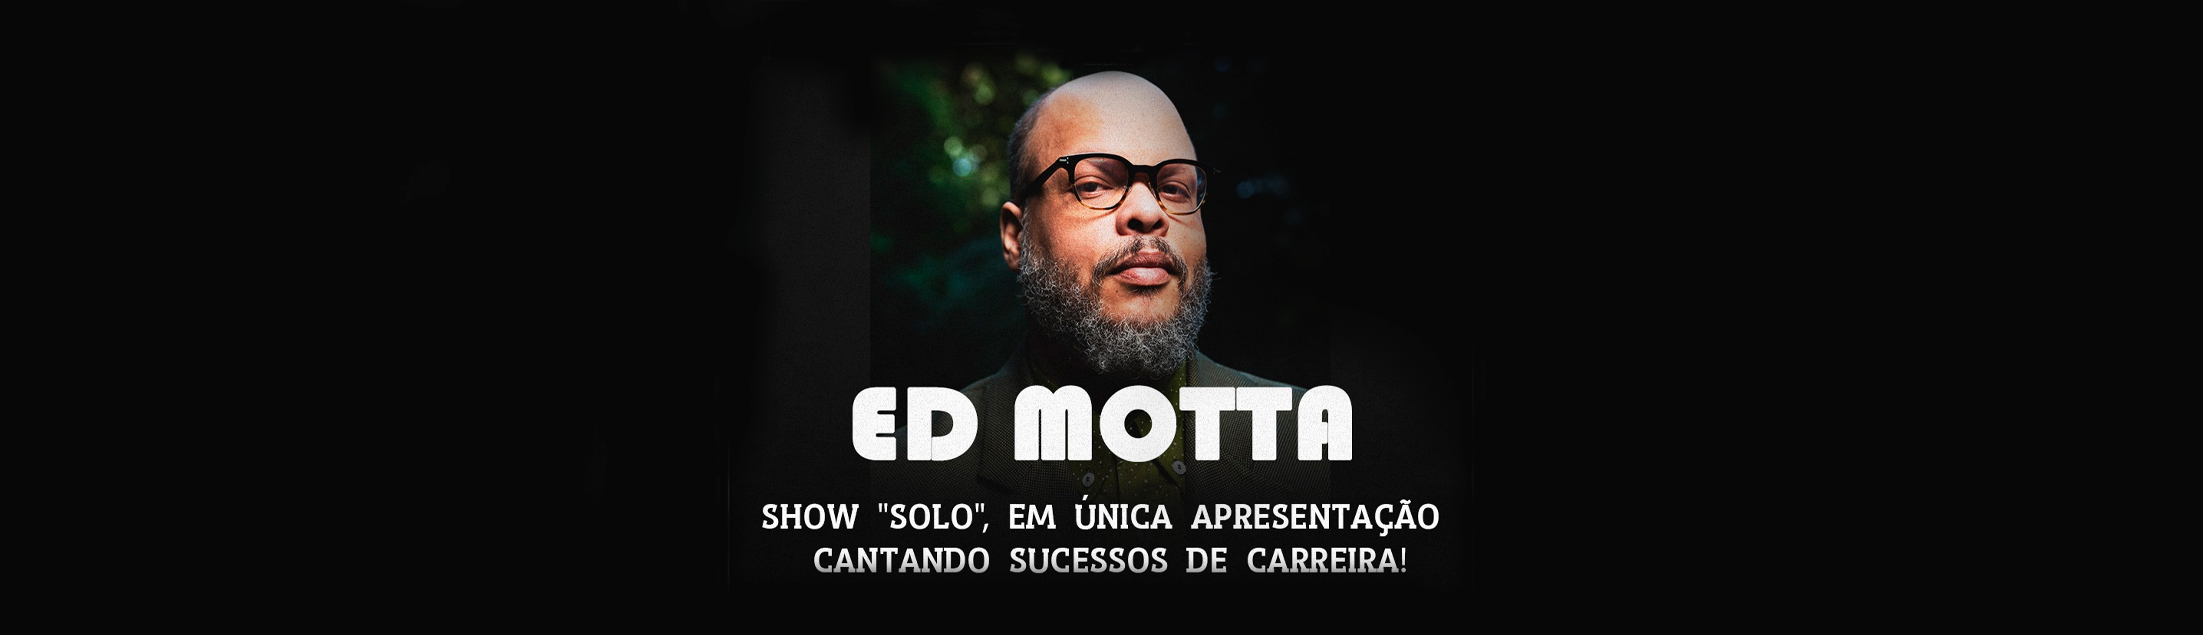 Ed Motta 